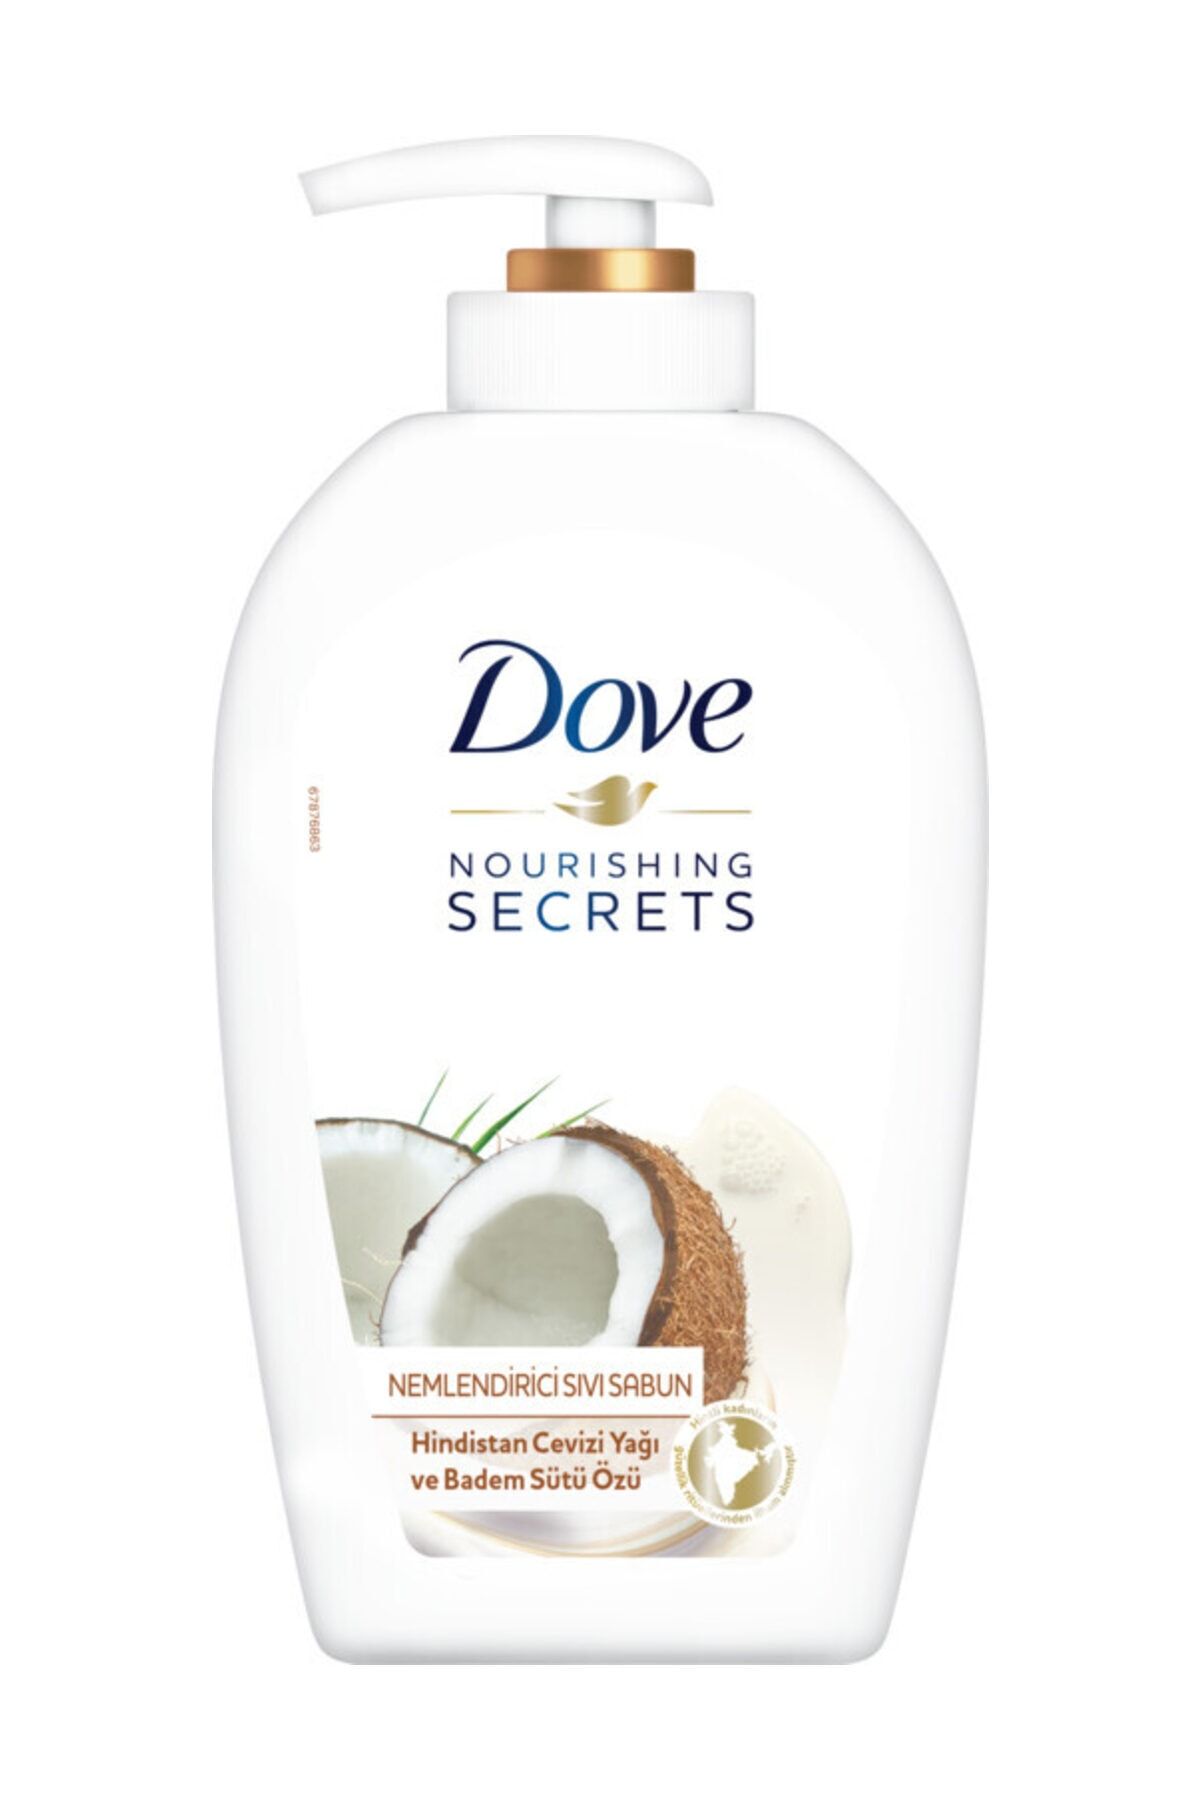 Dove Nemlendirici Sıvı Sabun Hindistan Cevizi Yağı ve Badem Sütü Özü 500 ml